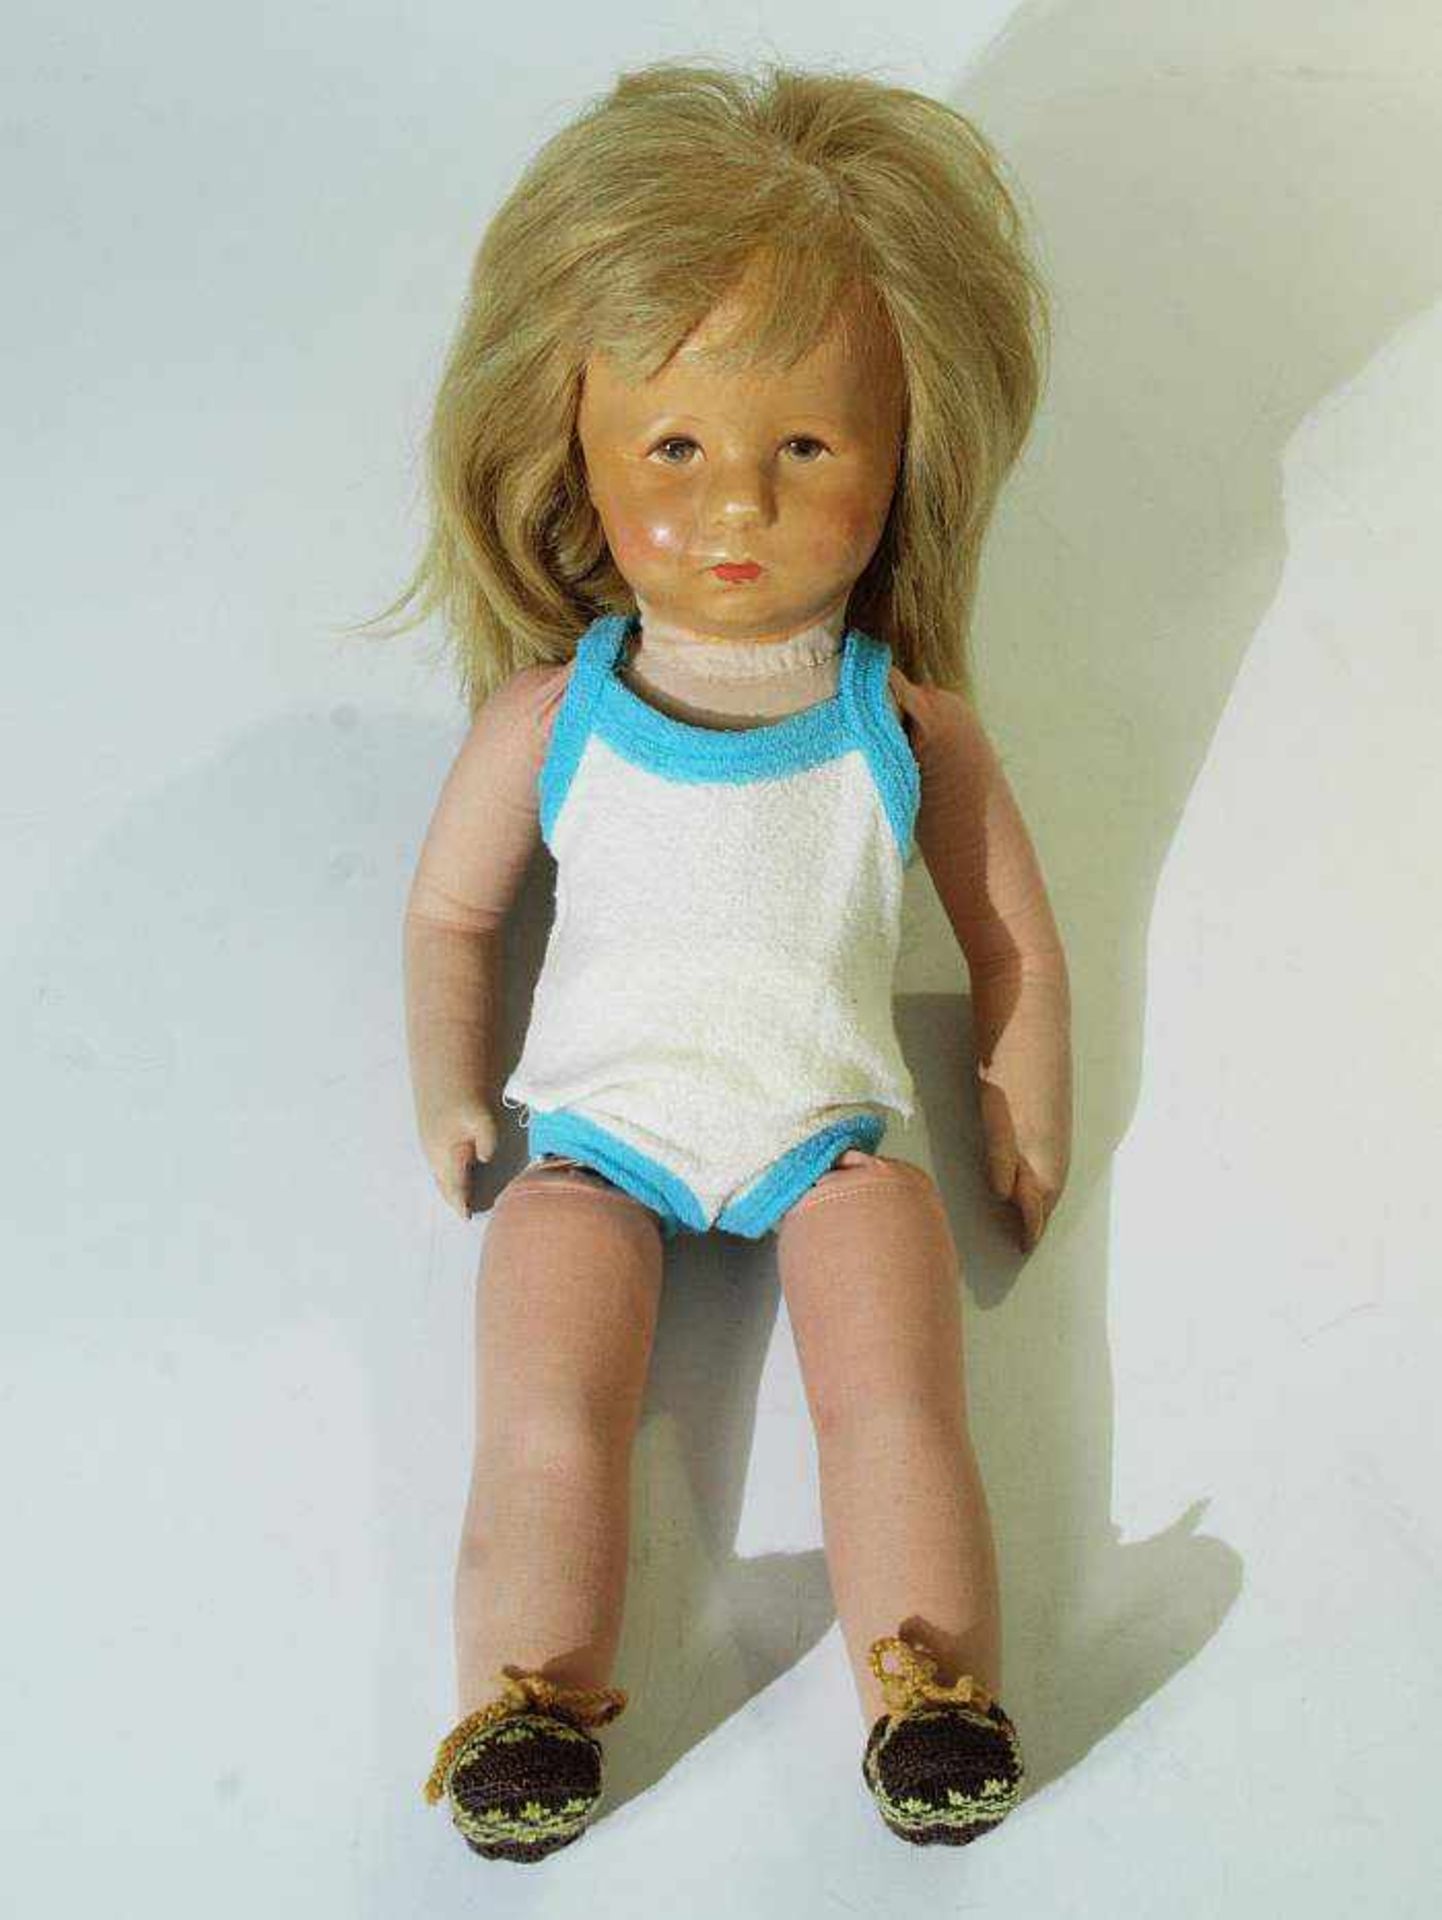 Käthe- Kruse -Puppe, wohl um 1950. Käthe- Kruse-Puppe, wohl um 1950. Mädchen mit blonden Haaren,